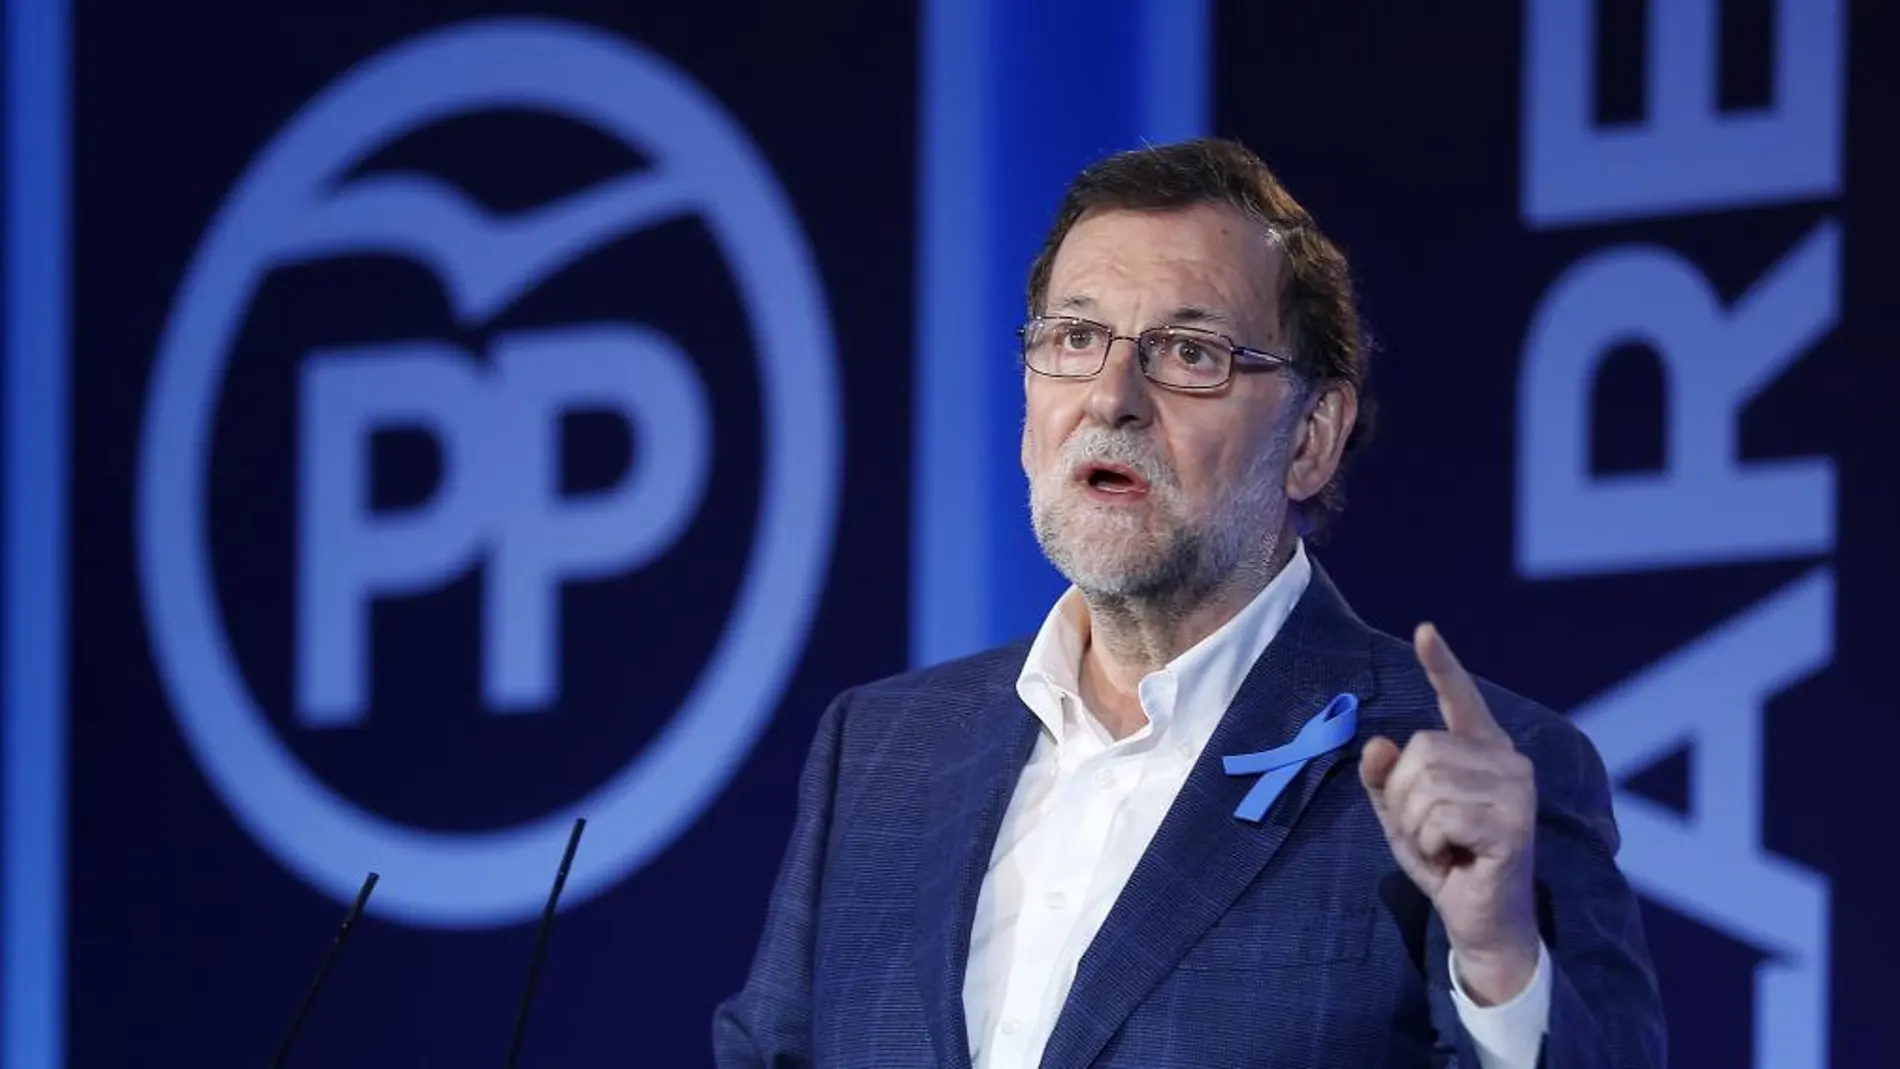 El líder del PP y presidente del Gobierno en funciones, Mariano Rajoy, durante su intervención en la Convención del PP